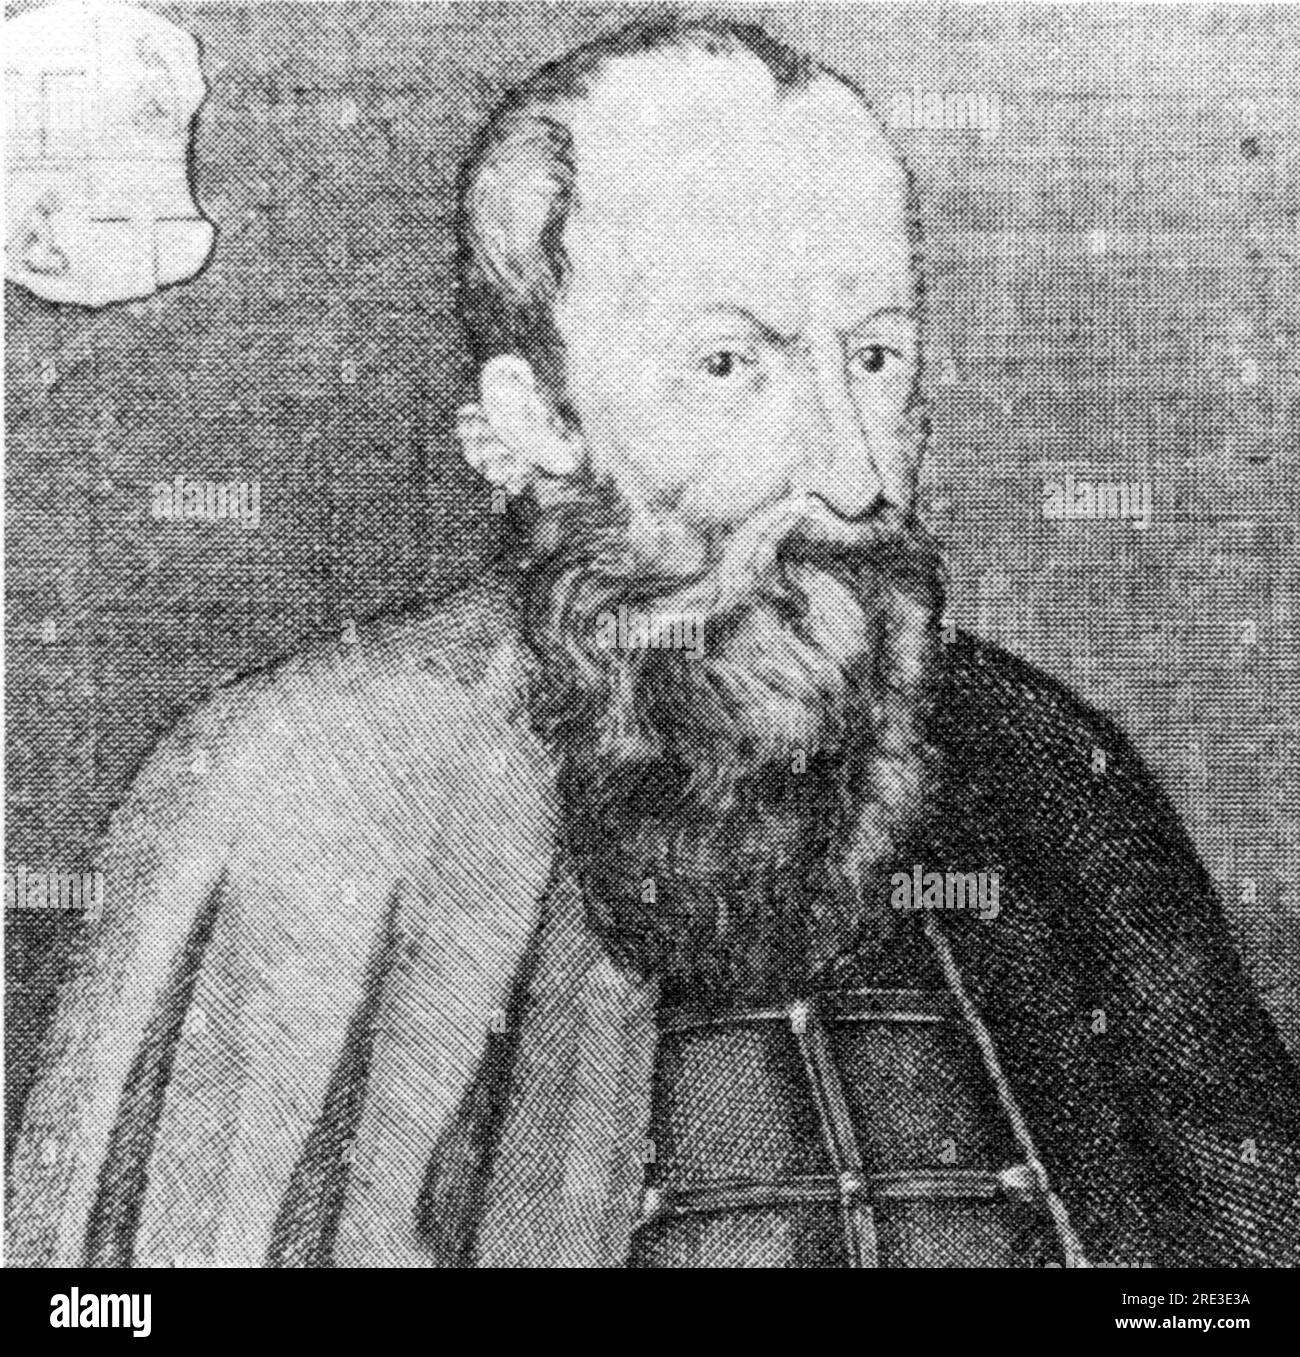 Willer, Georg, The Elder, 1514 - 1593, éditeur allemand, Gravure, 16e siècle, LE DROIT D'AUTEUR N'A PAS À ÊTRE EFFACÉ Banque D'Images